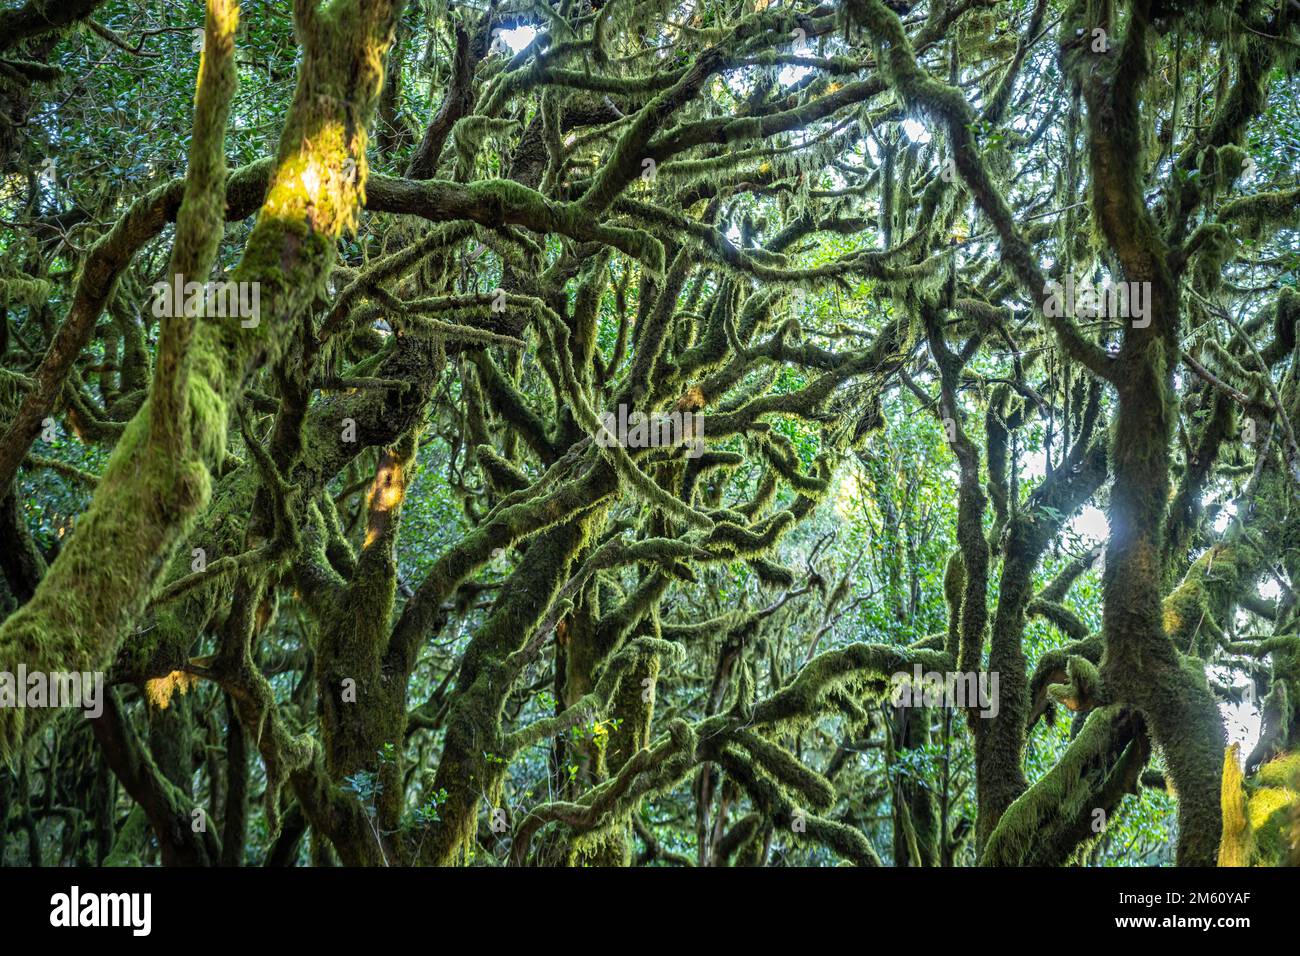 Wald im Nationalpark Garajonay, UNESCO Welterbe auf der Insel La Gomera, Kanarische Inseln, Spanien |  Garajonay National Park  forest on La Gomera, C Stock Photo